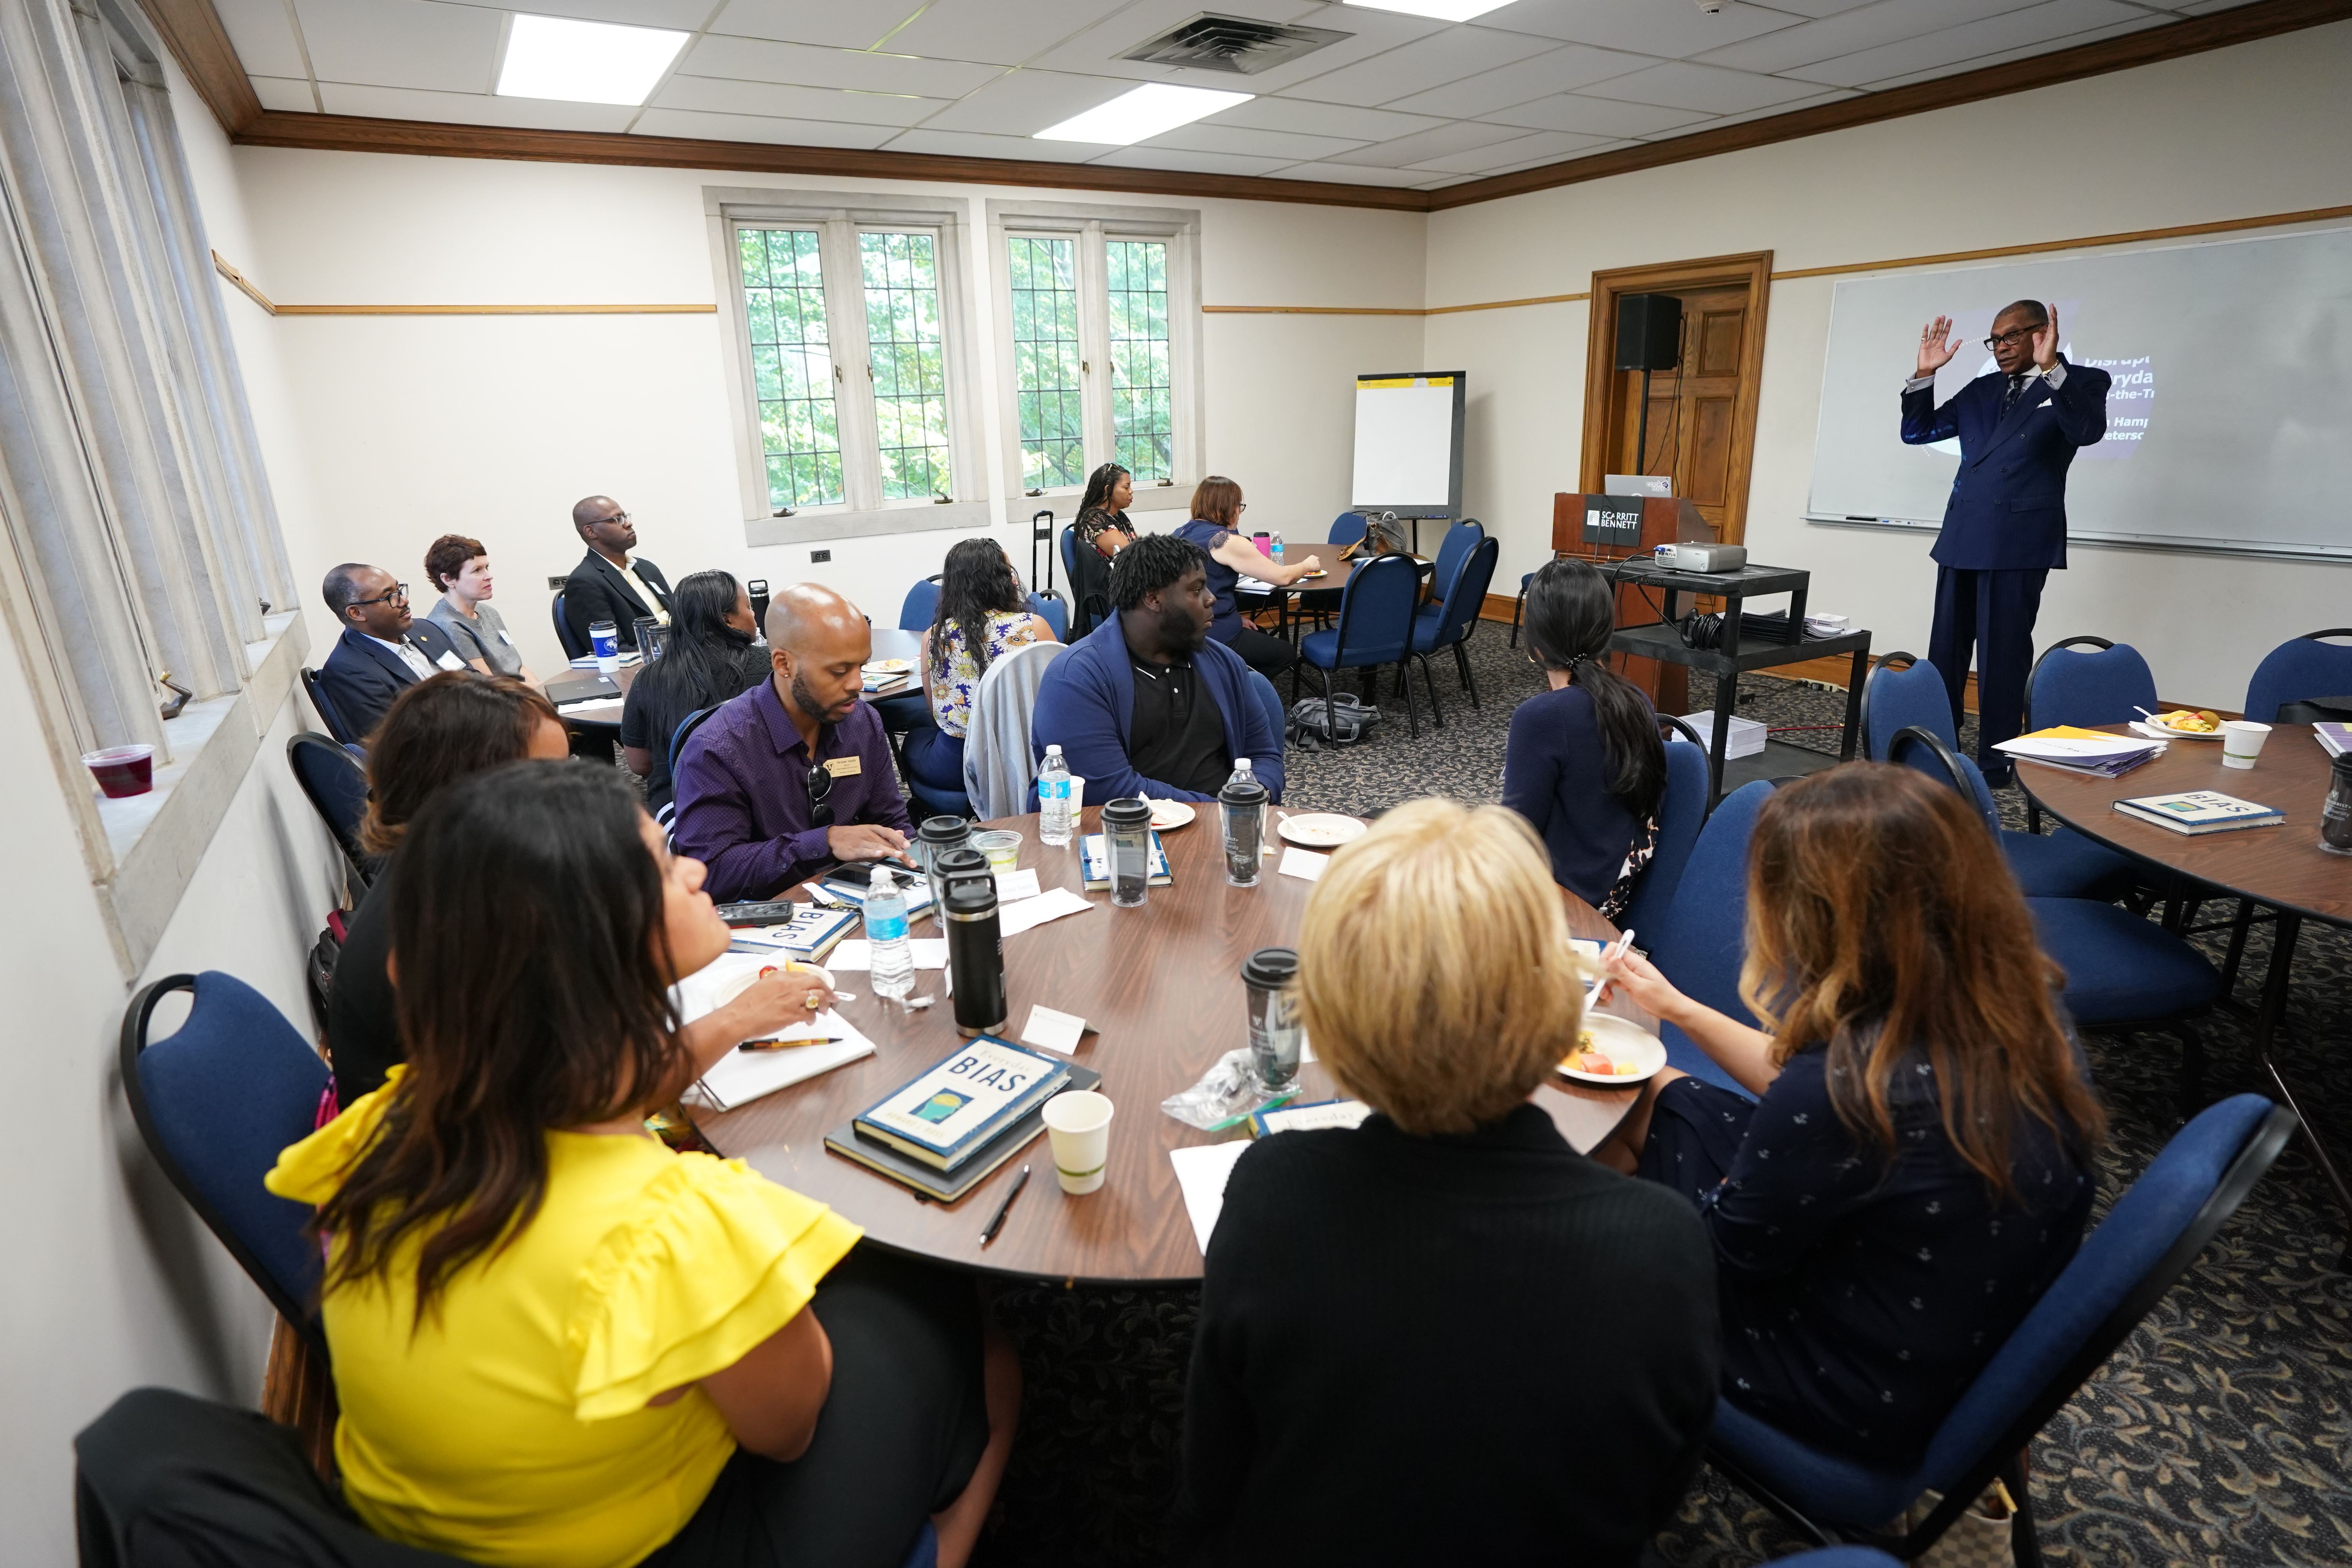 Participants at the unconscious bias train-the-trainer workshop (John Russell/Vanderbilt University)